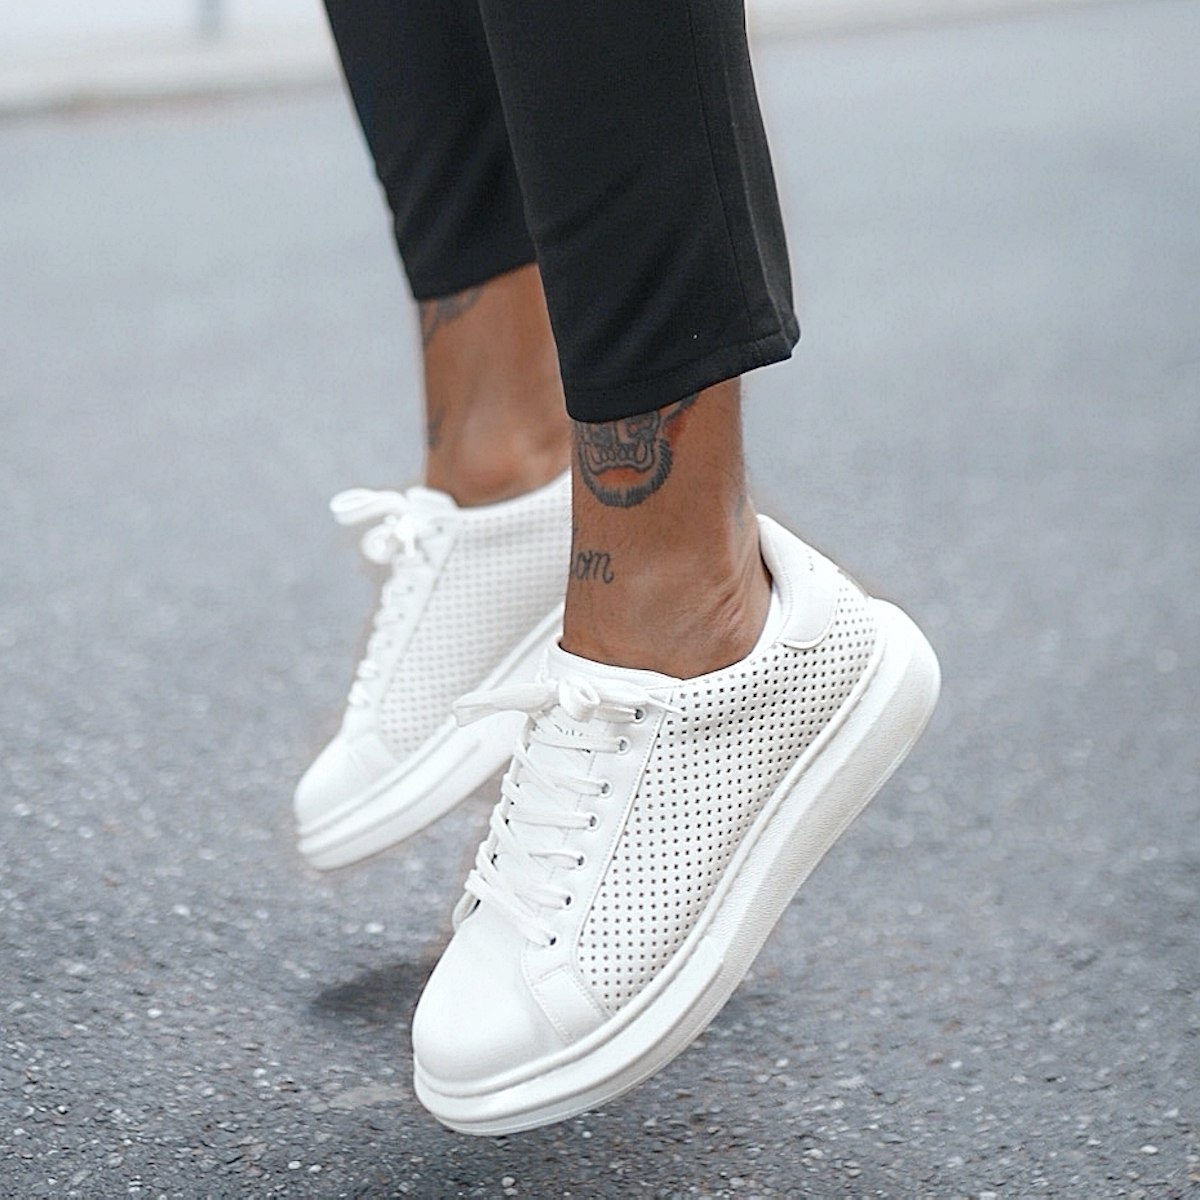 Mega Side-Mesh Sneakers in Full White - 7